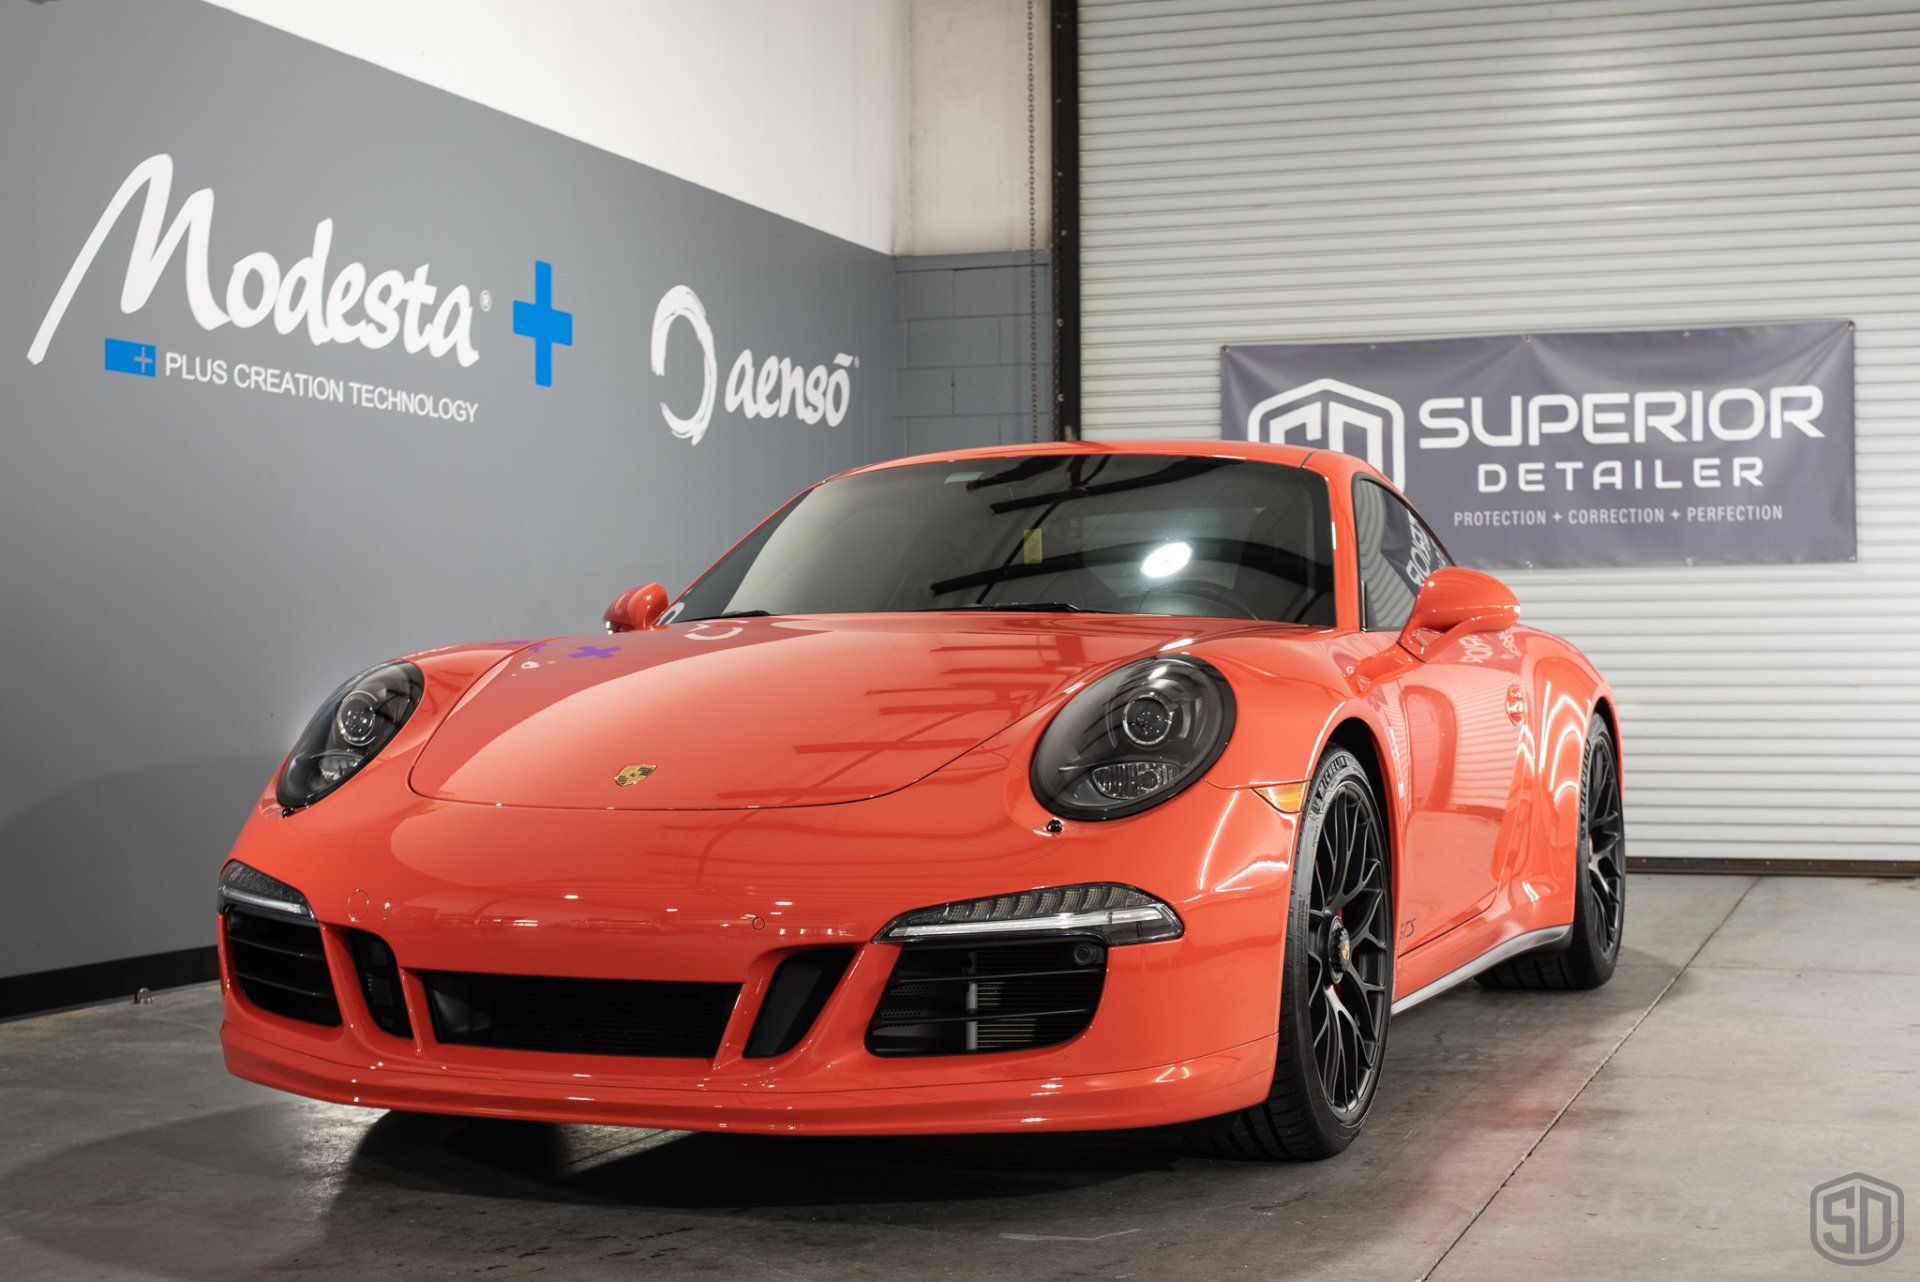 2016 Porsche  911 GTS Detailing, Paint Correction, Paint Chip Repair, Nano-Titanium Glass Coating, Paint Protection Film Orlando, FL